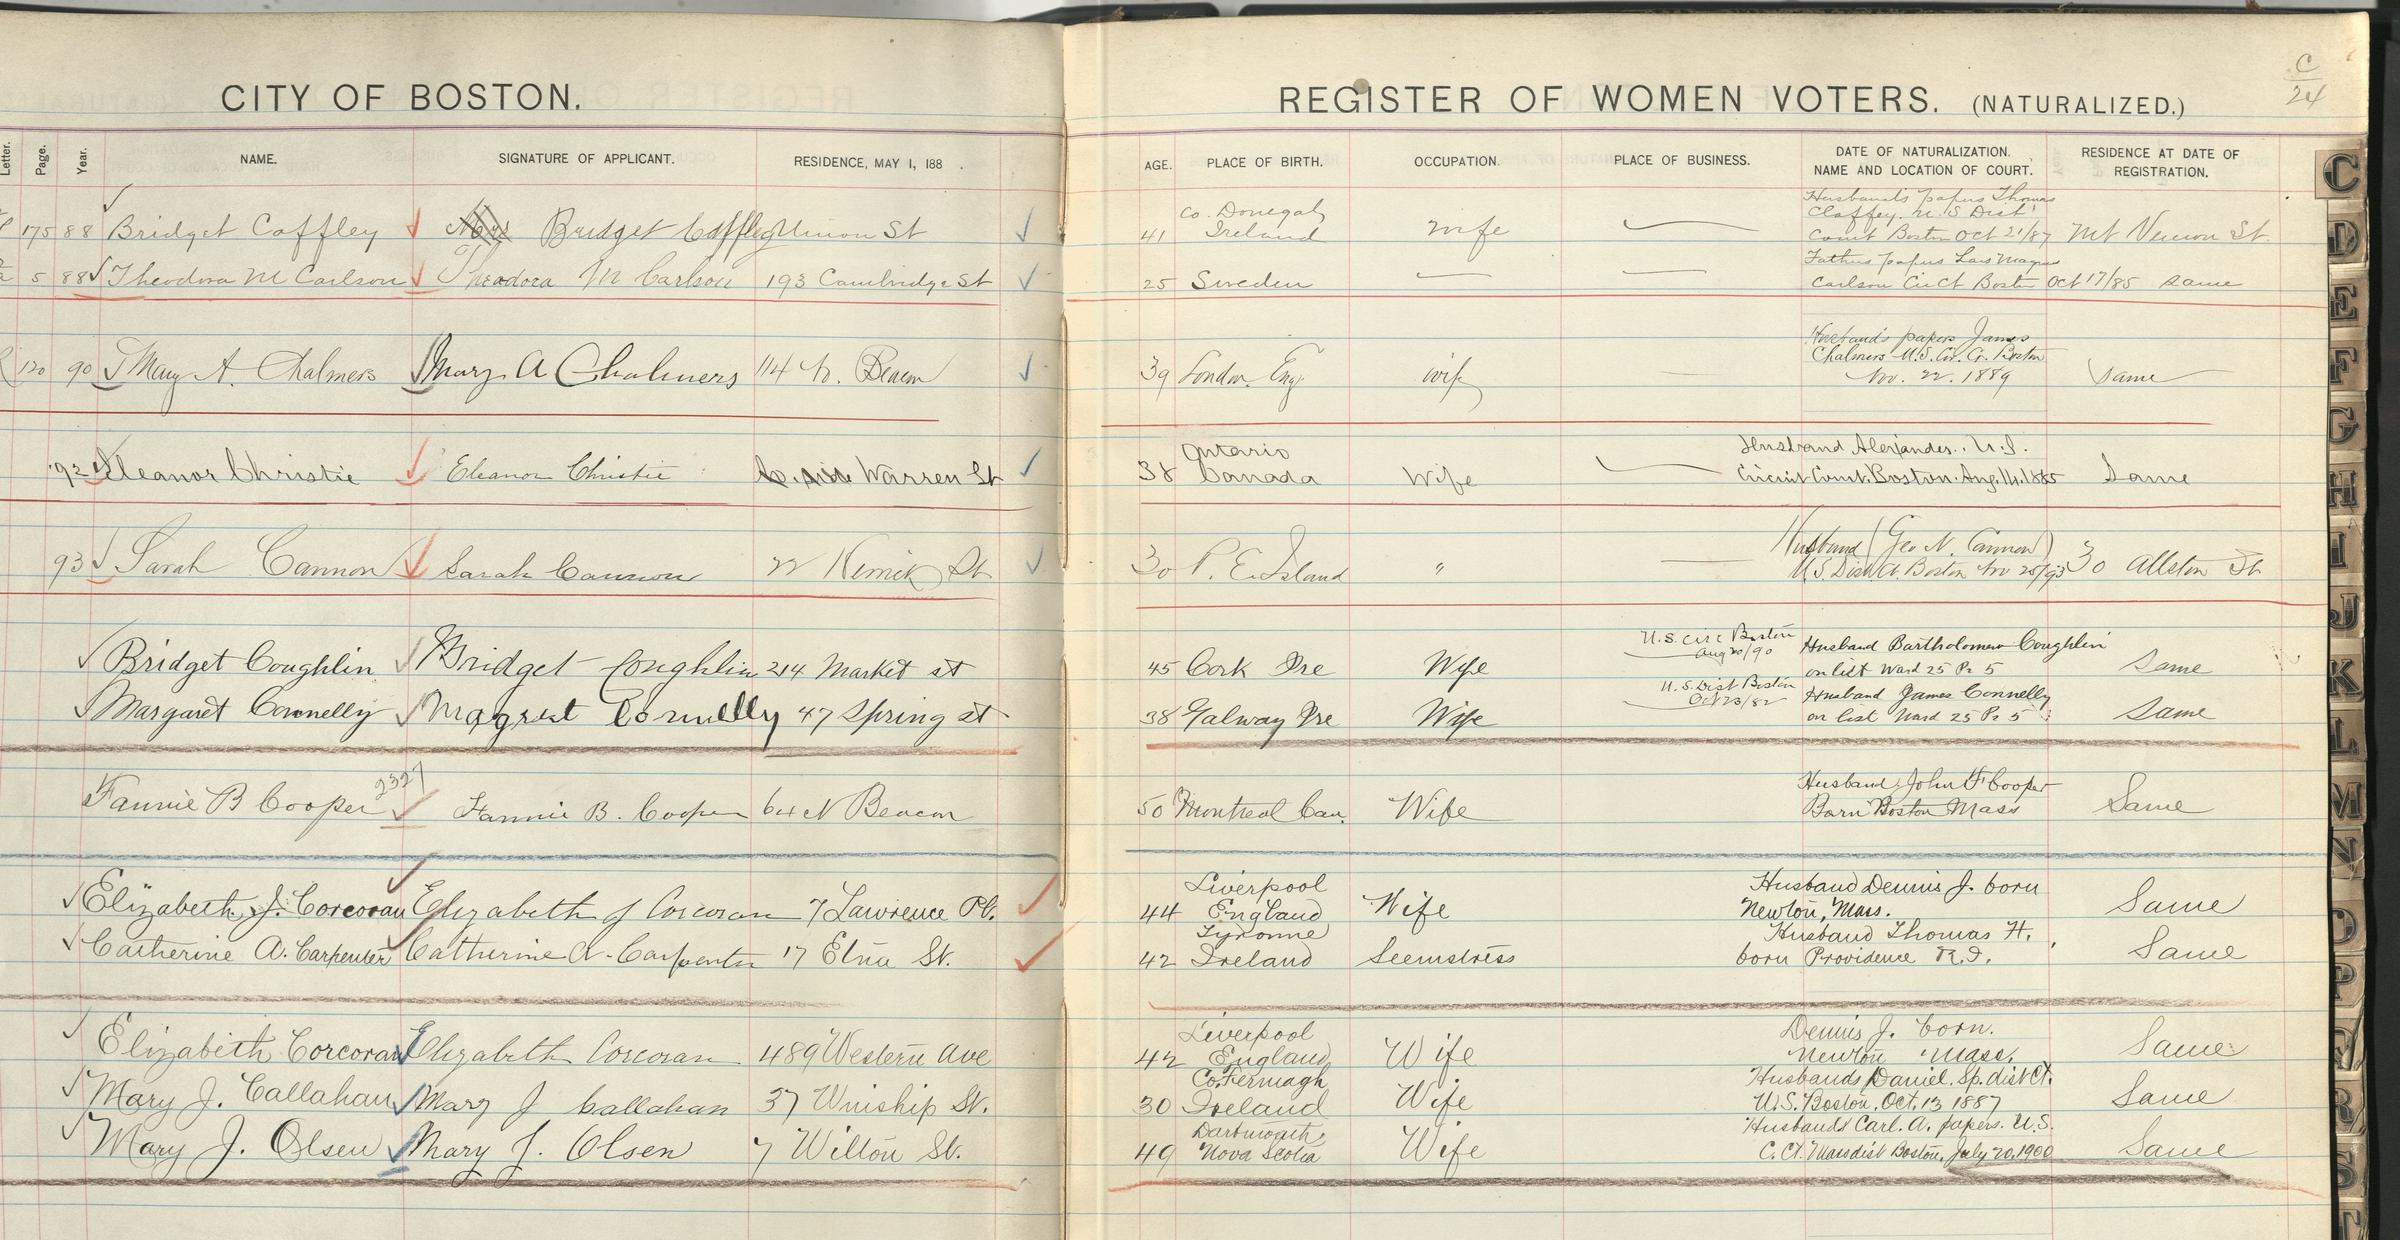 1893 Naturalized Women's Voter Register